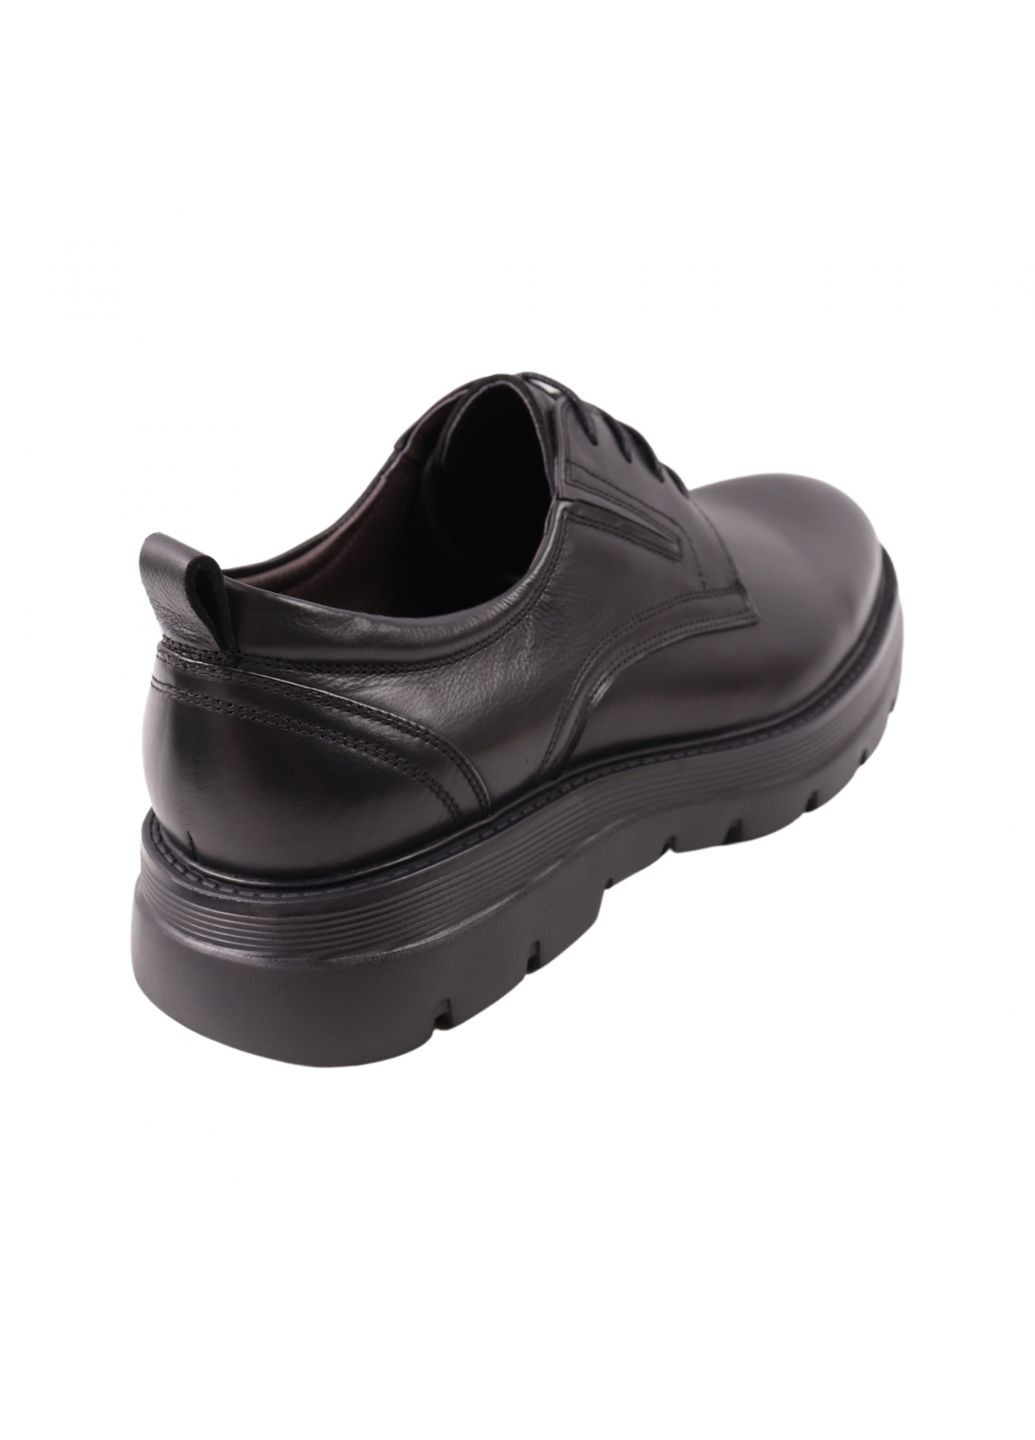 Туфлі чоловічі Lido Marinozi чорні натуральна шкіра Lido Marinozzi 313-23dtc (263349989)